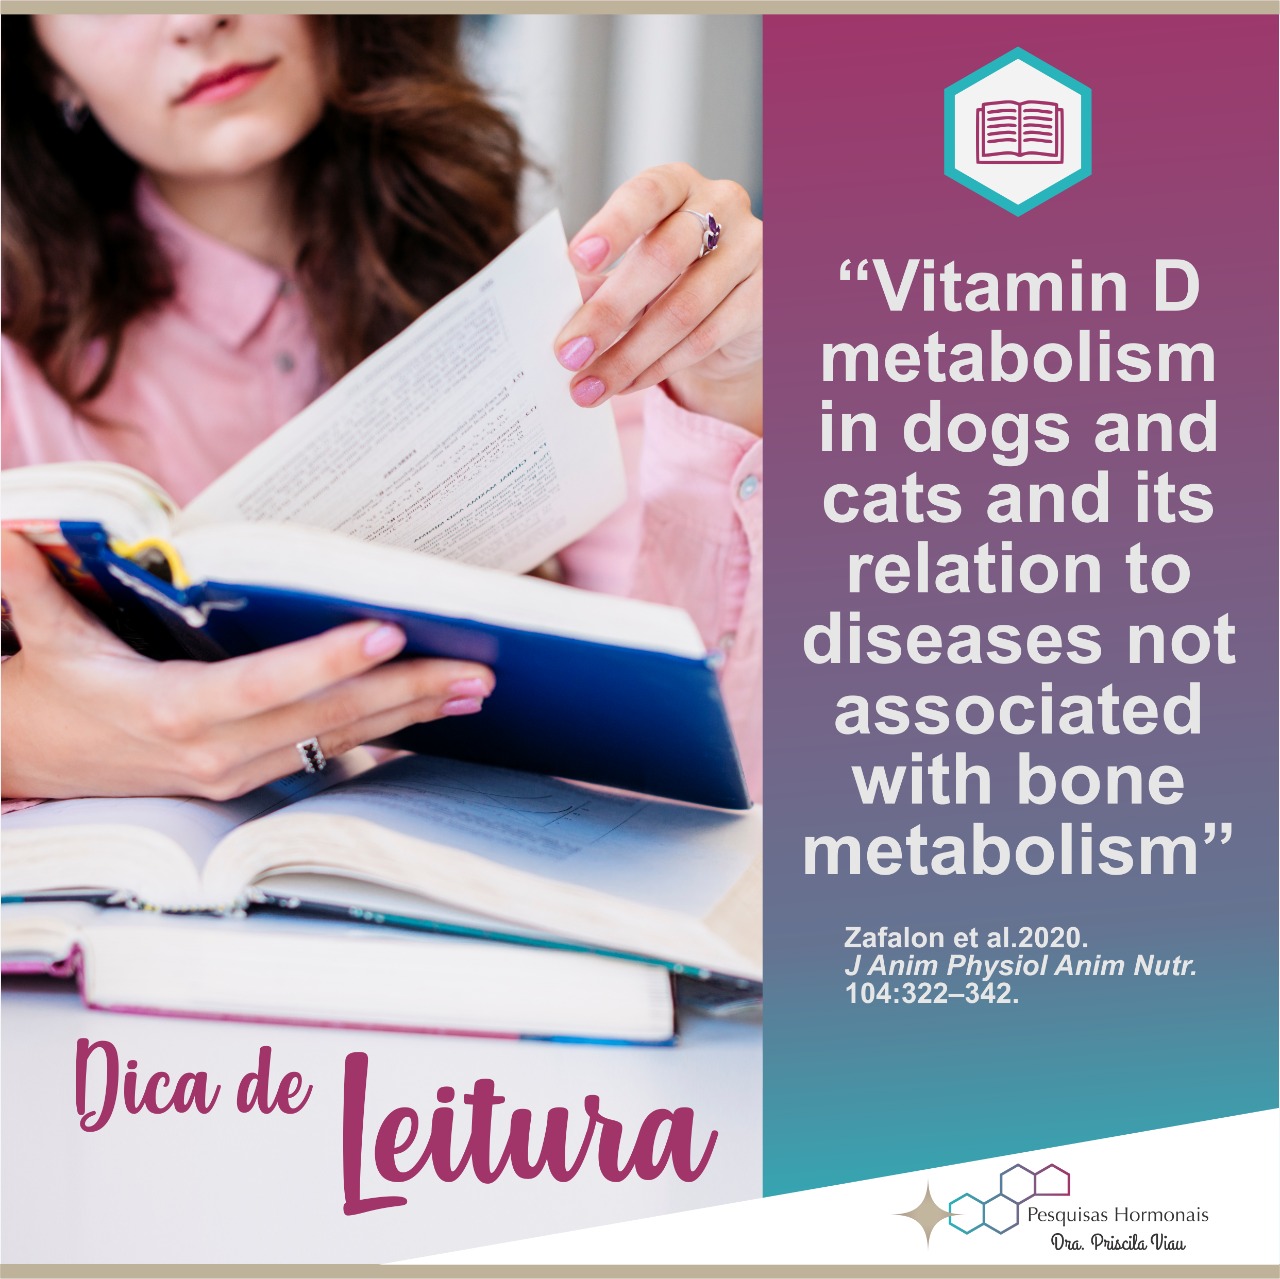 Dica de leitura sobre vitamina D artigo cientifico vitamina d caes e gatos